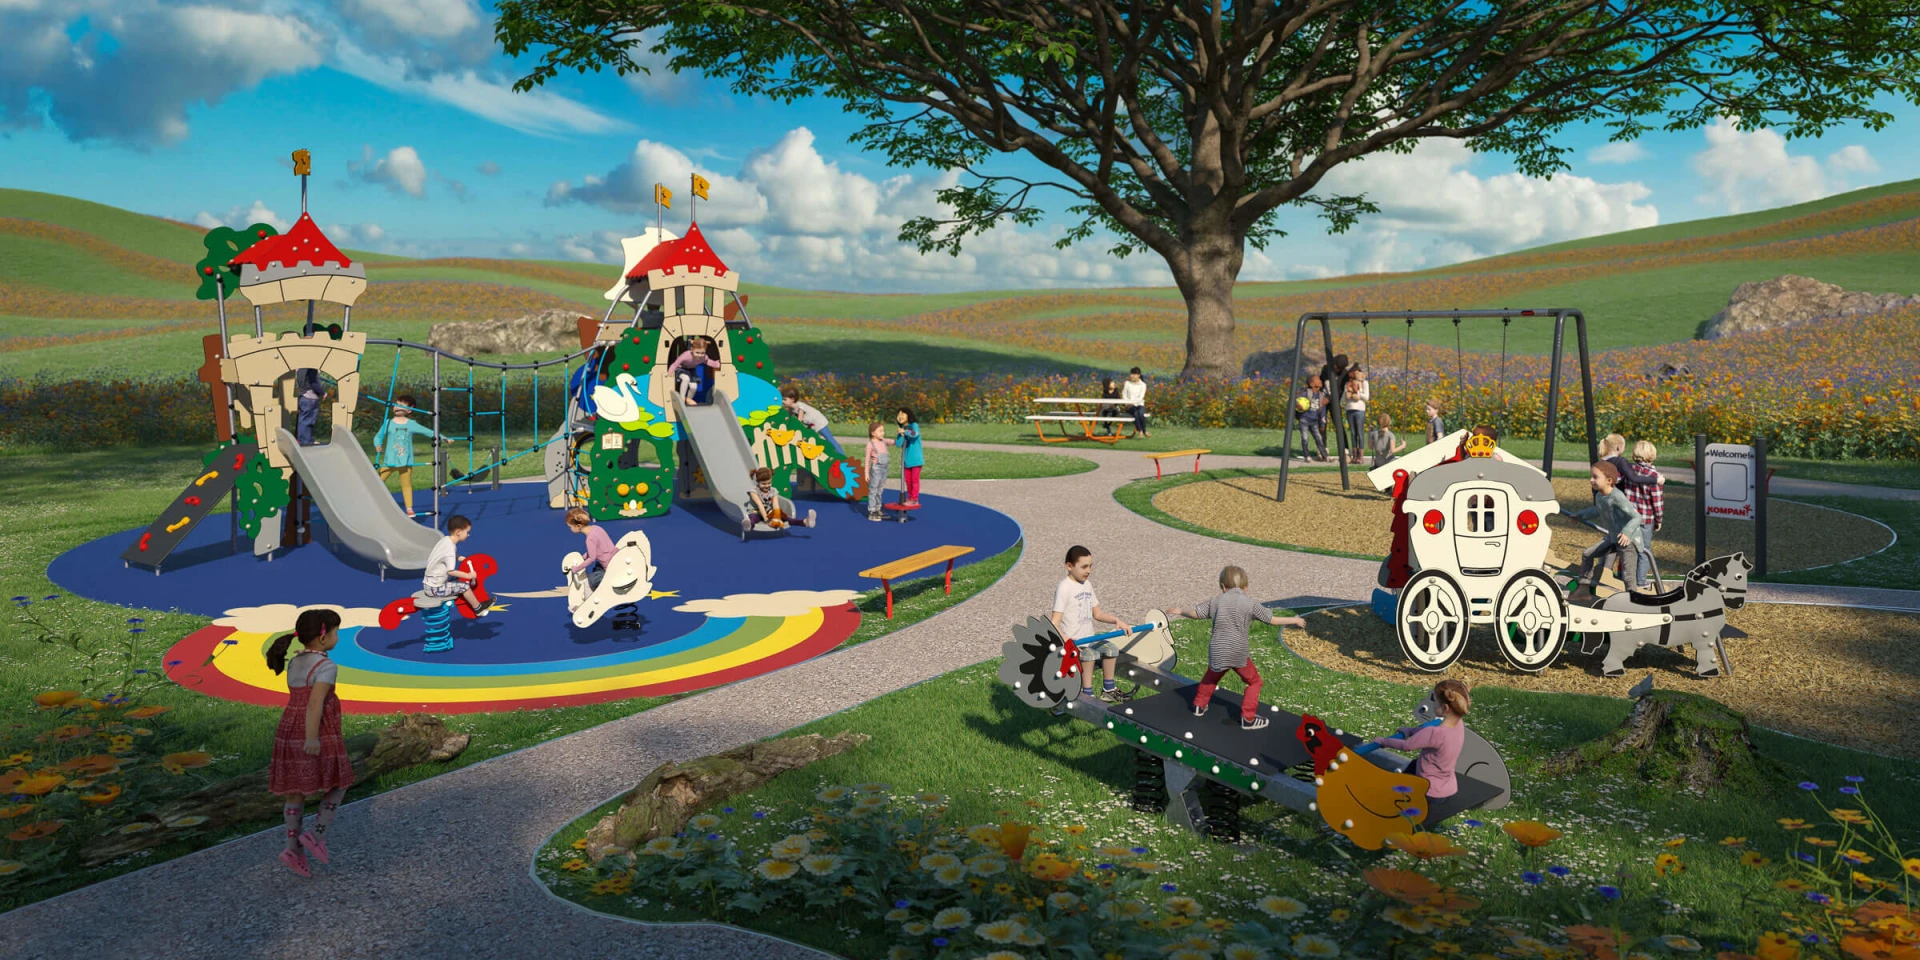 návrh dětského hřiště s pohádkovým motivem